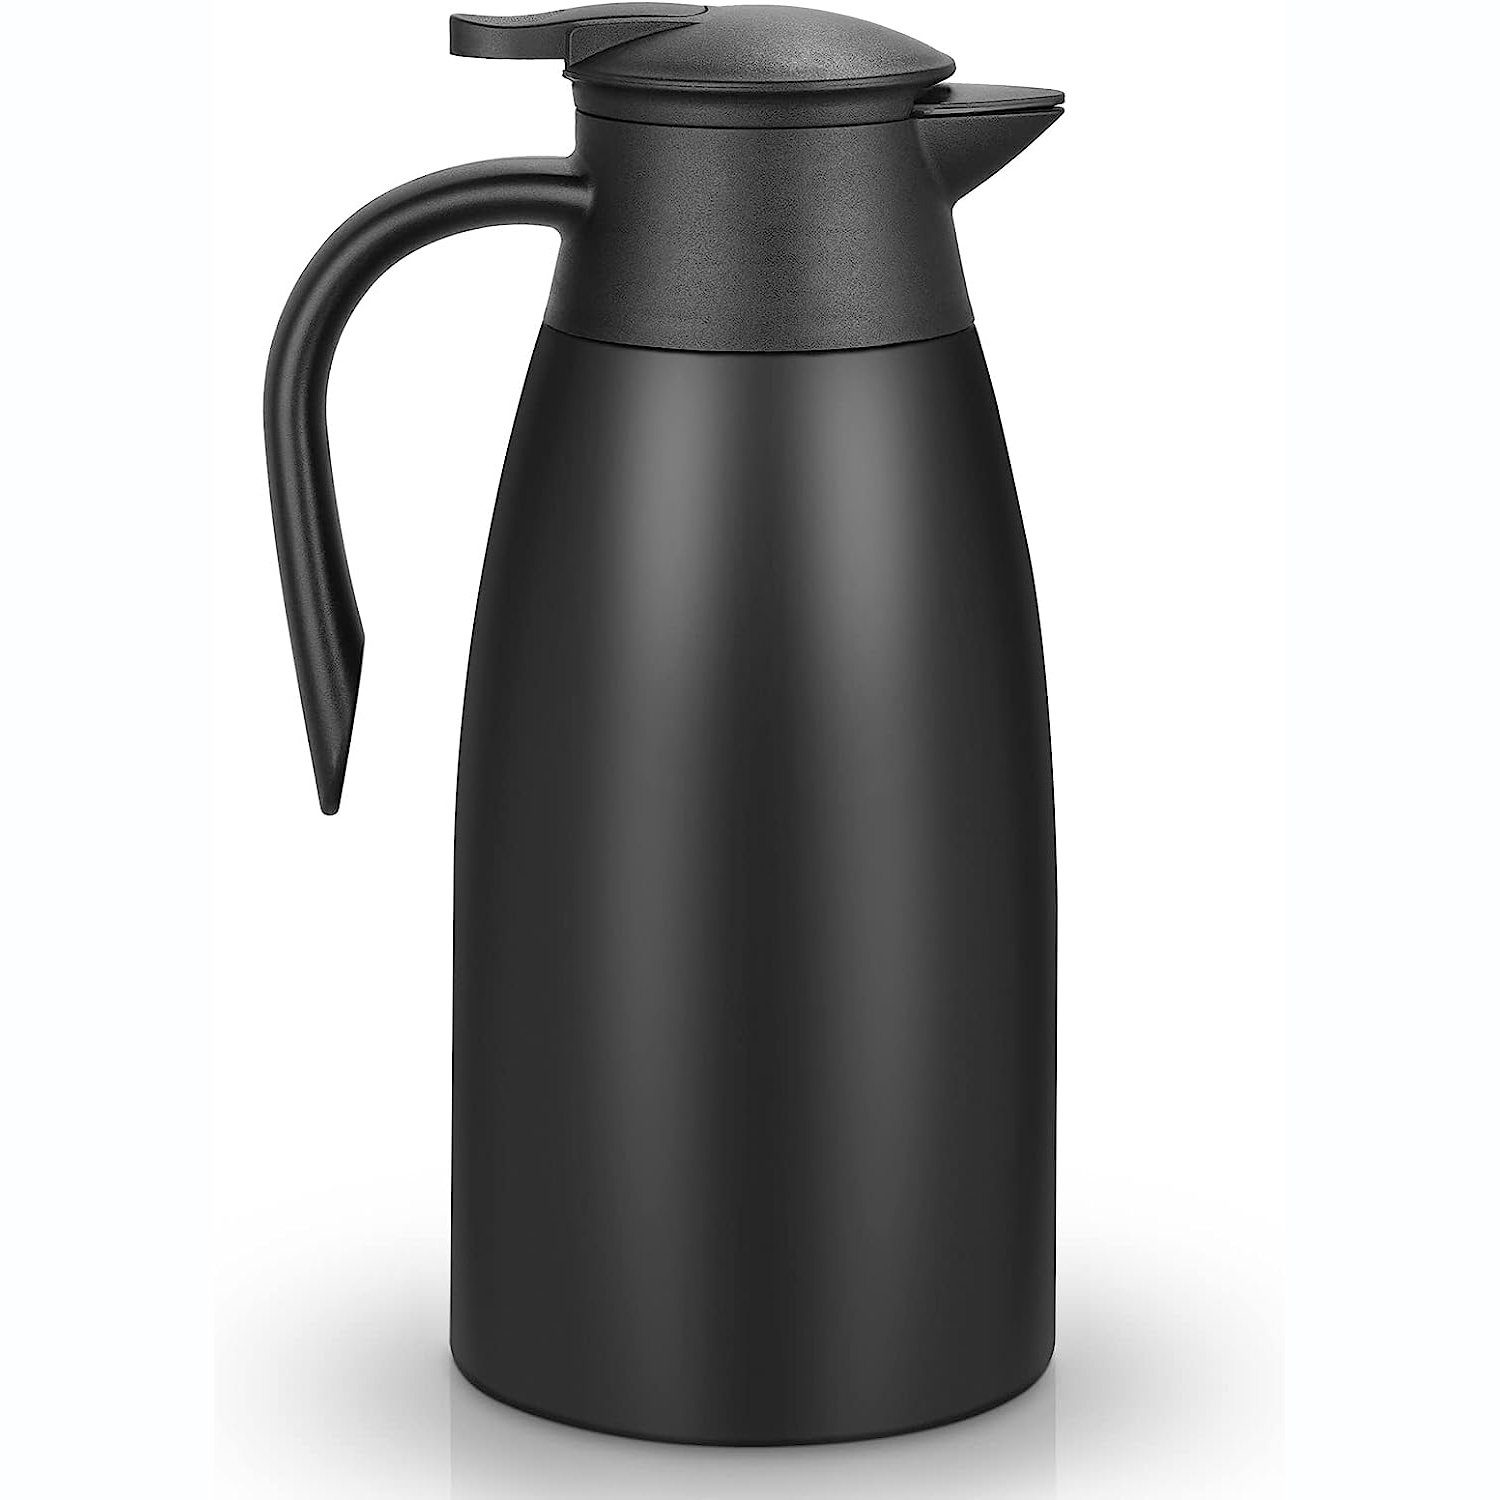 Bedee Isolierkanne 2Liter Edelstahl Isolierkanne thermoskanne Teekanne Vakuum kaffeekanne, 2 l, (Thermoskanne), mit 12 Stunden Wärmespeicherung Kältespeicher, schwarz